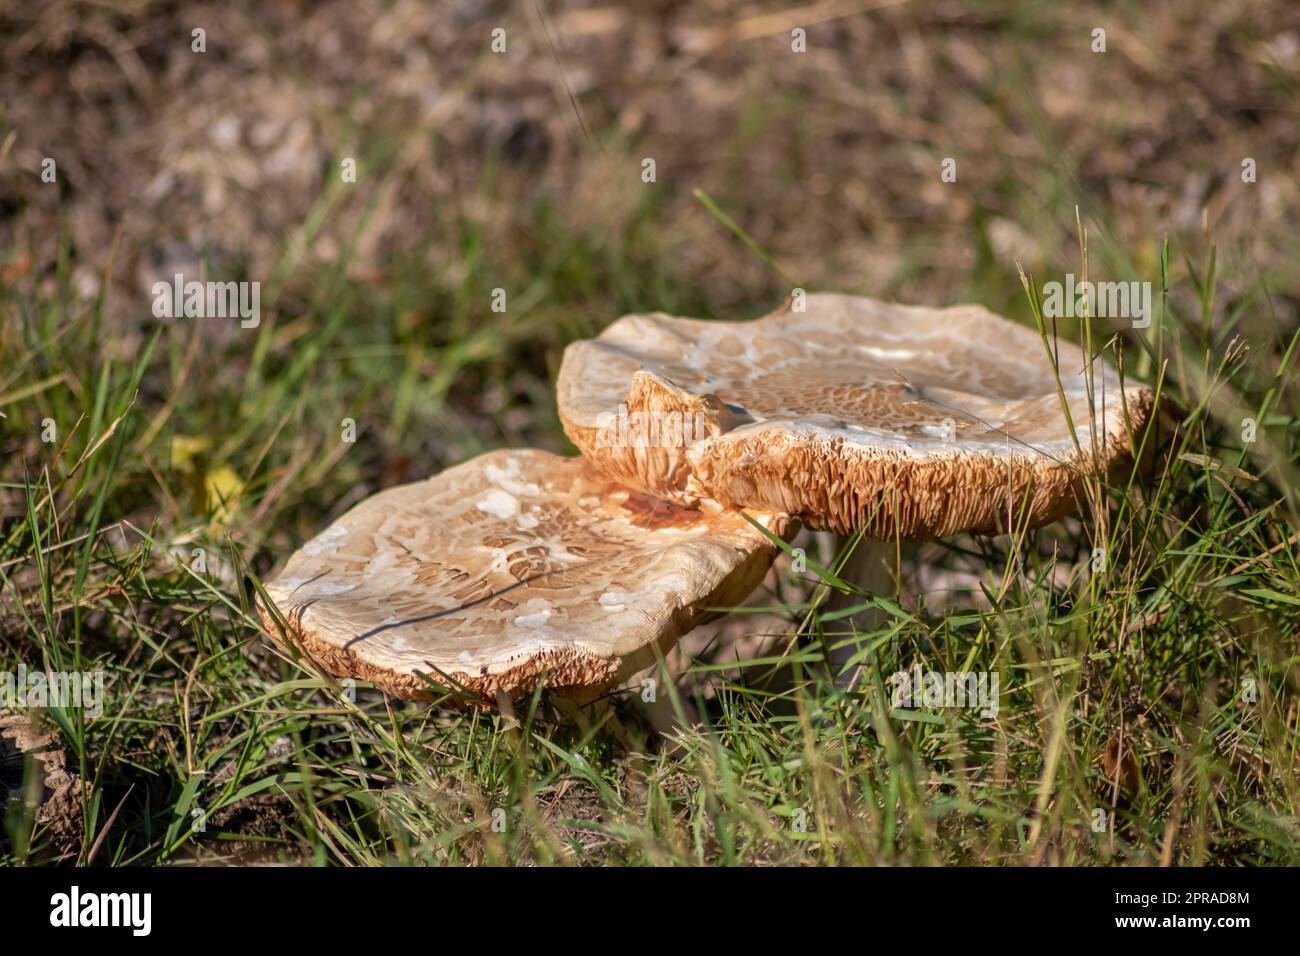 Grandi funghi in una foresta che si trova in autunno durante il tour dei funghi, con fogliame marrone retroilluminato a terra nella stagione dei funghi, come delizioso ma forse velenoso e pericoloso frutto della foresta Foto Stock